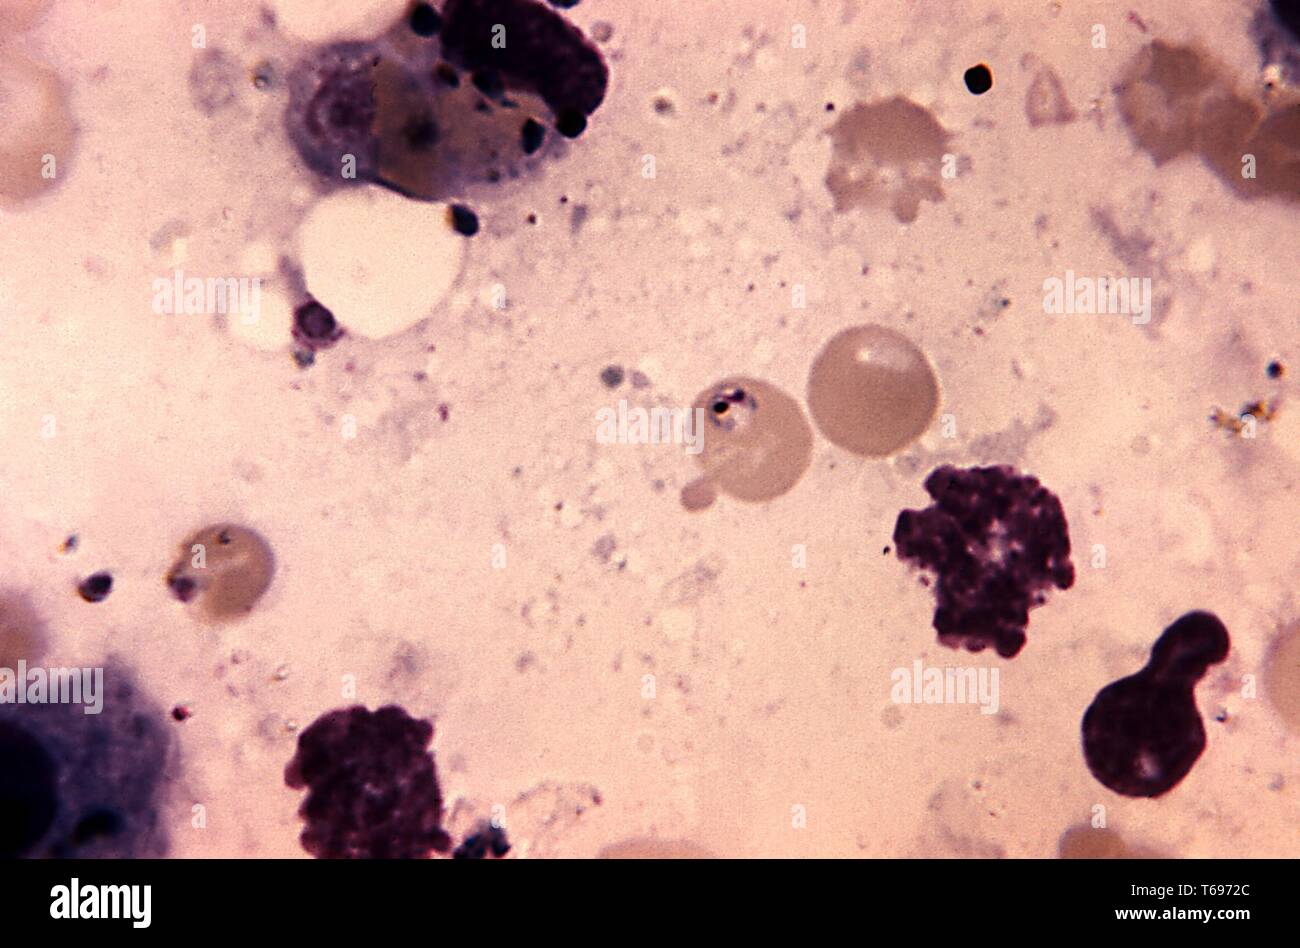 Ölkapselung photomicrograph einer Leber gewebe infiziert mit Plasmodium malariae, die bei der Autopsie, 1969 übernommen. Bild mit freundlicher Genehmigung Zentren für Krankheitskontrolle und Prävention (CDC)/Neva Gleason. () Stockfoto